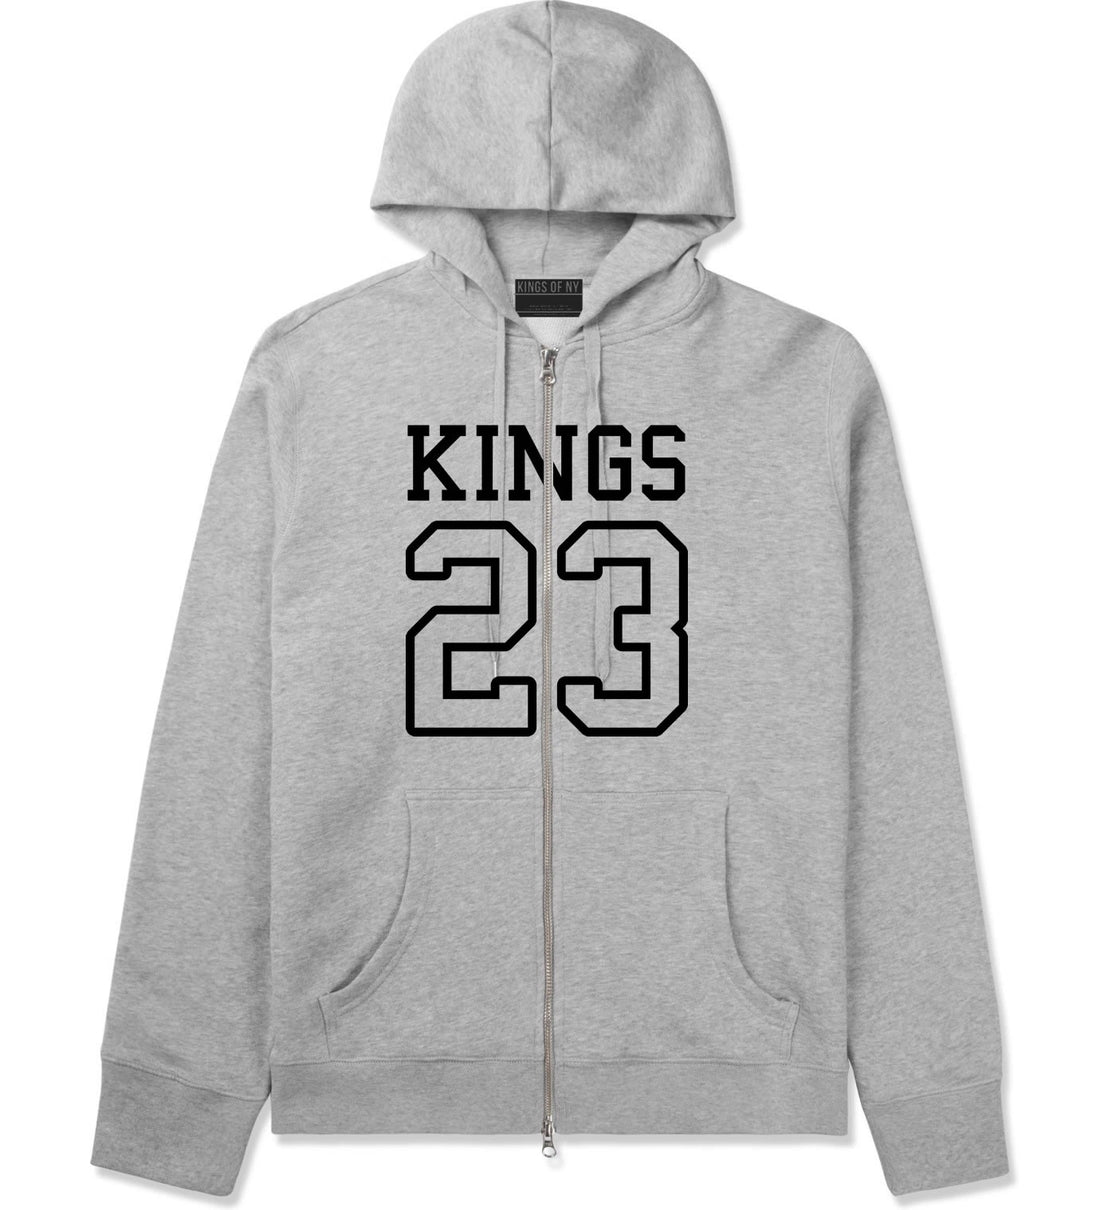 KINGS 23 Jersey Zip Up Hoodie in Grey By Kings Of NY